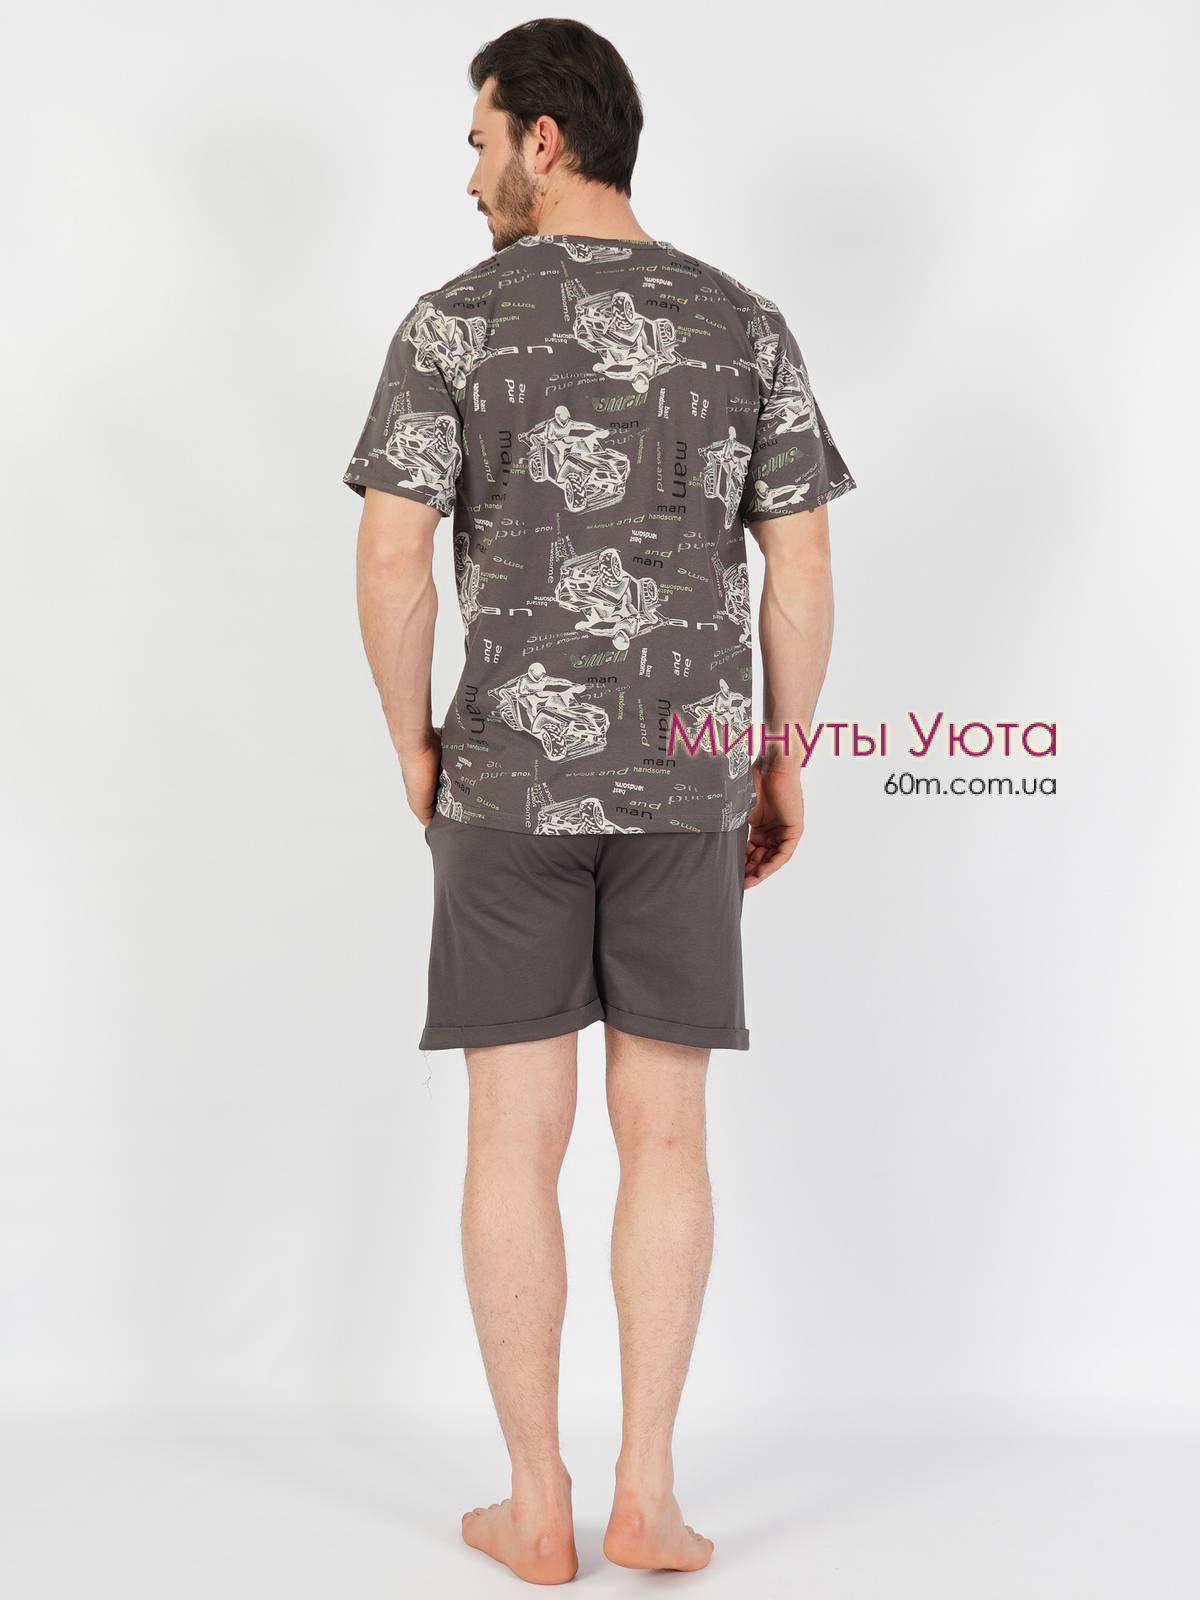 Летняя пижама для мужчины графитофого цвета в принт квадрациклов на футболке Gazzaz